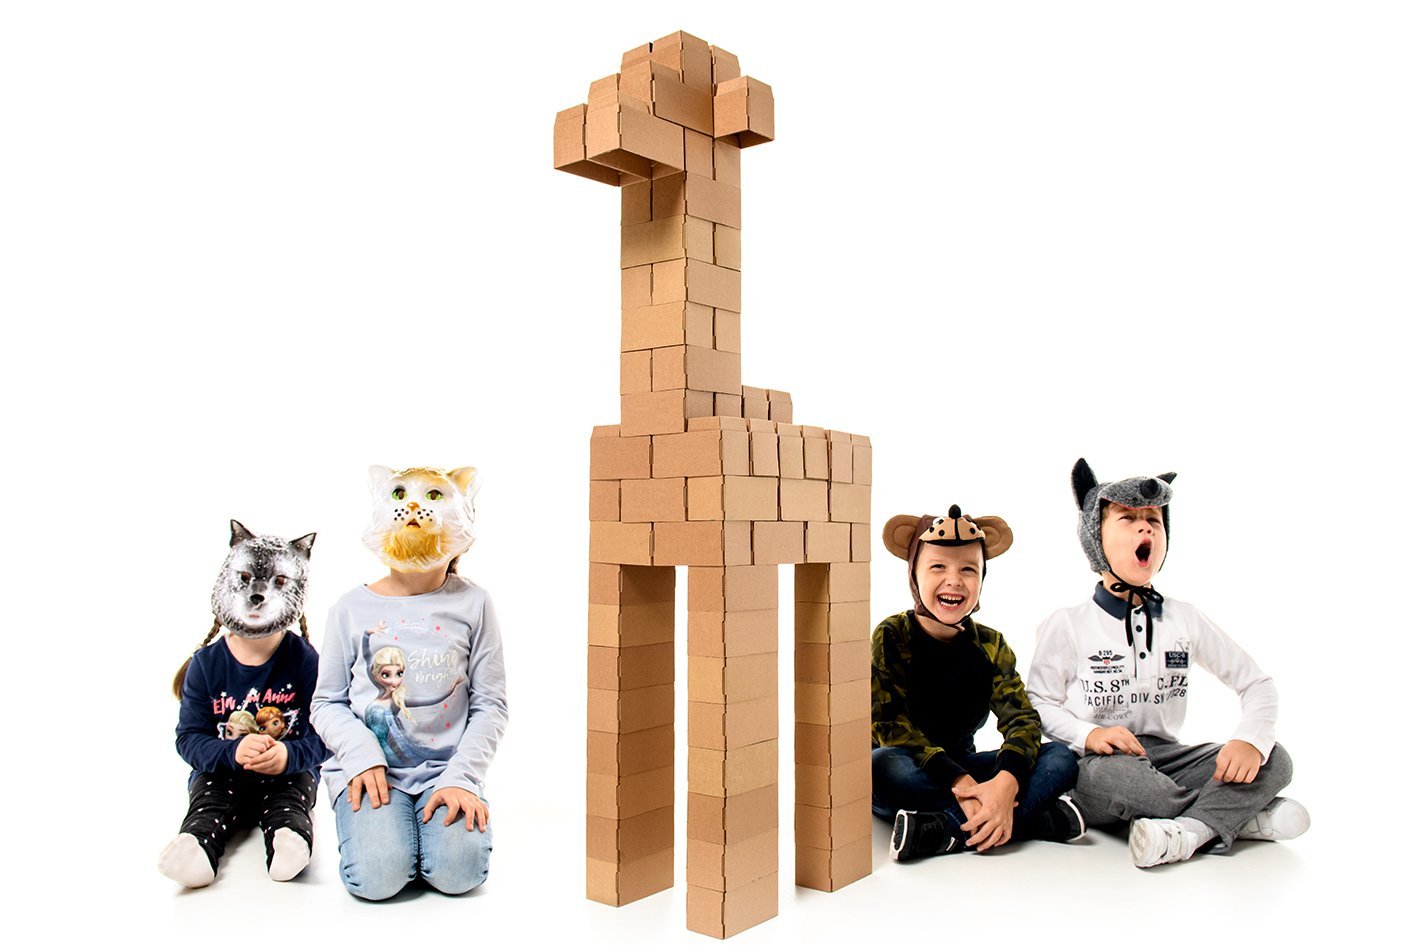 Real-Sized Building Blocks for Children - GIGI Bloks